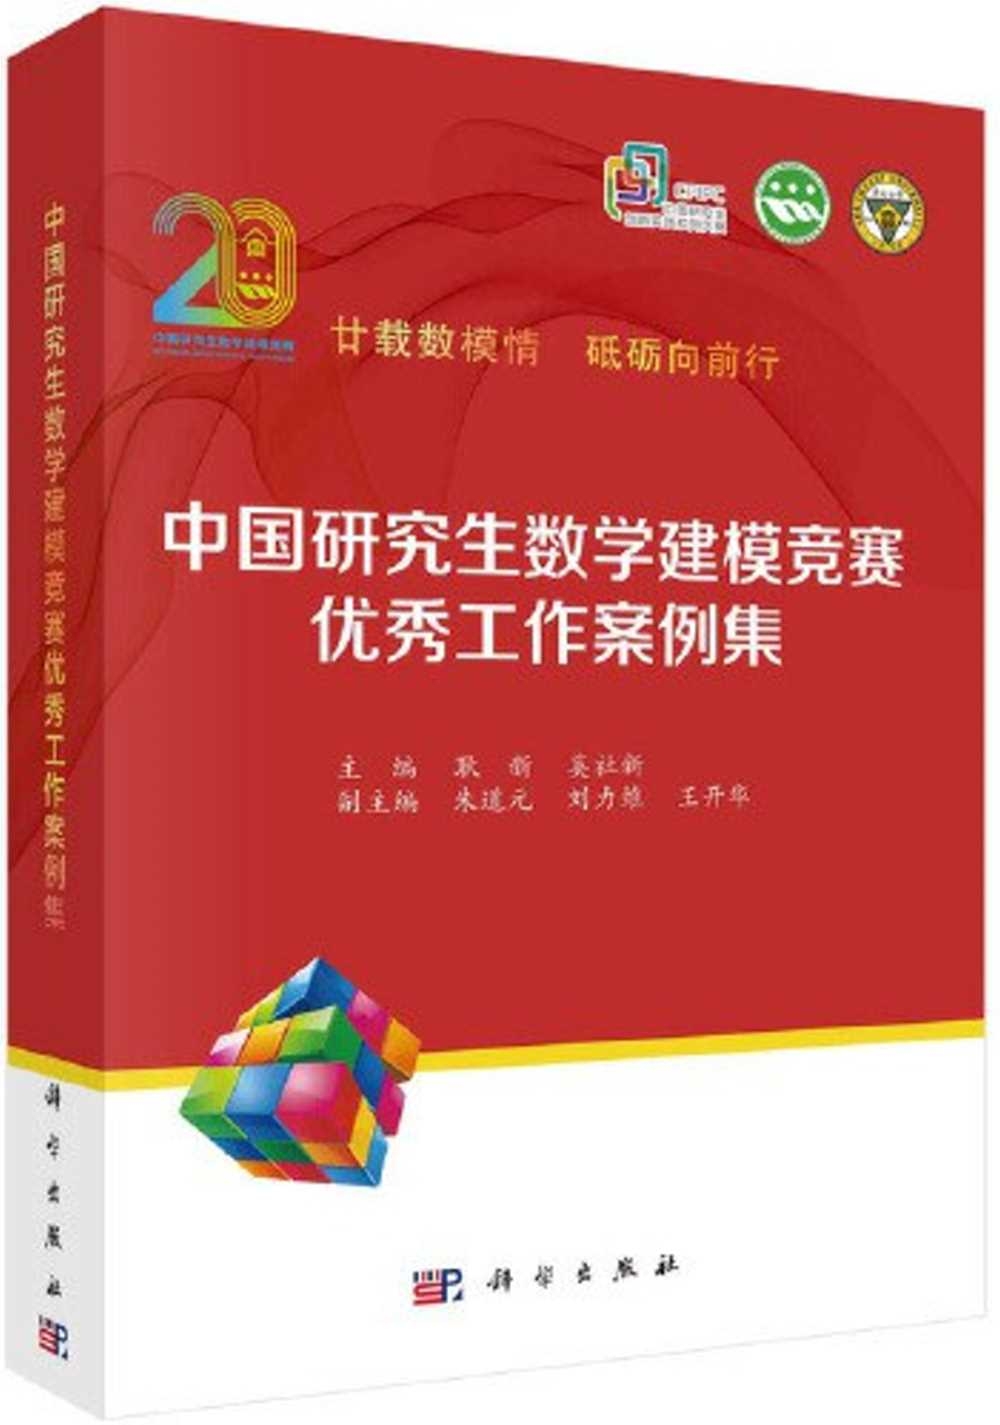 中國研究生數學建模競賽優秀工作案例集